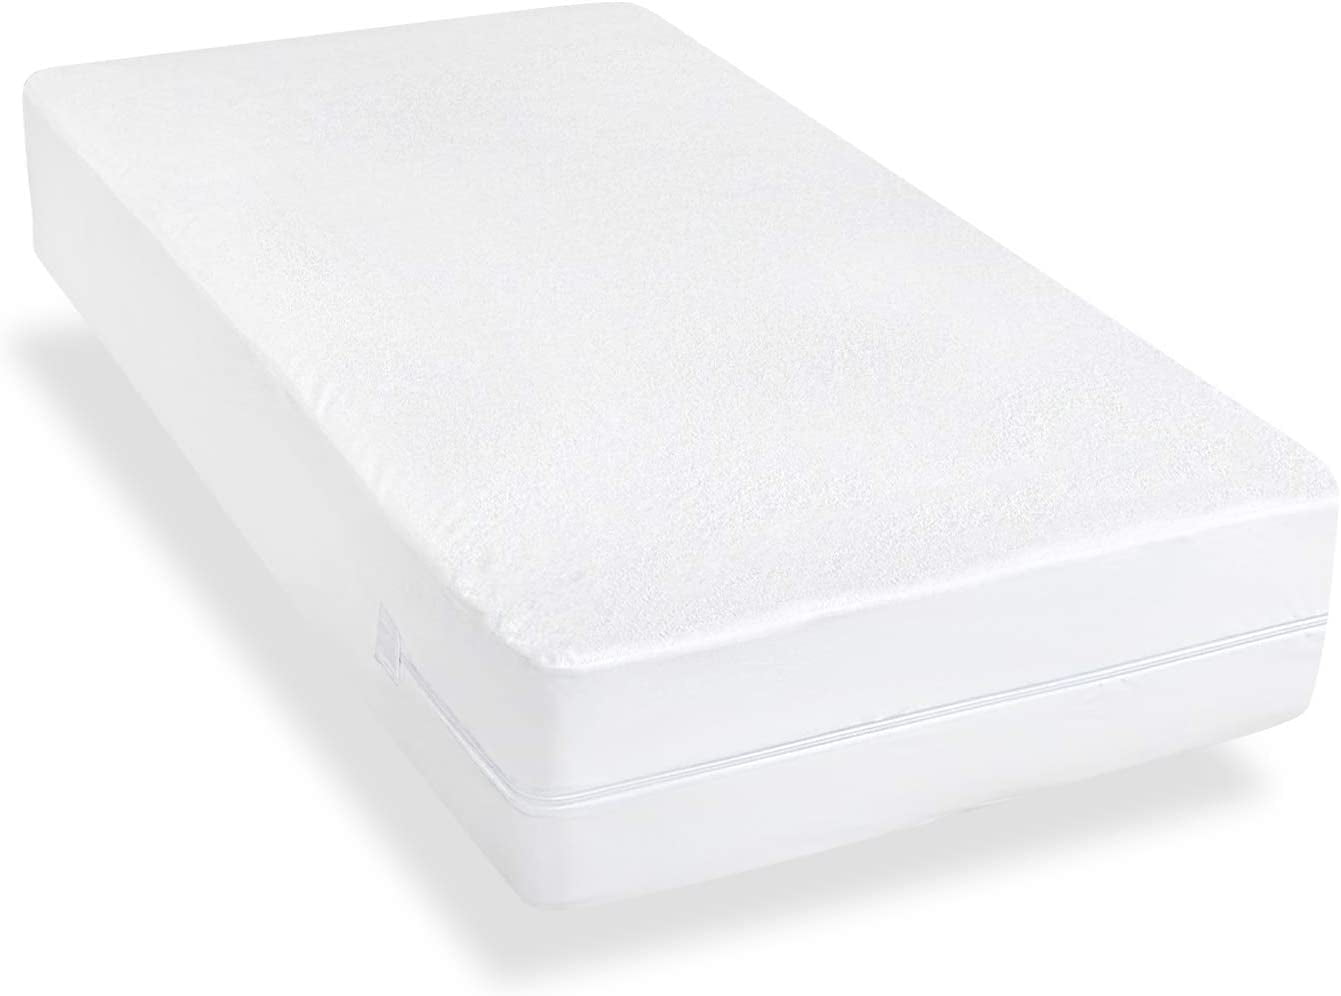 crib mattress waterproof zippered mattress encasement cover